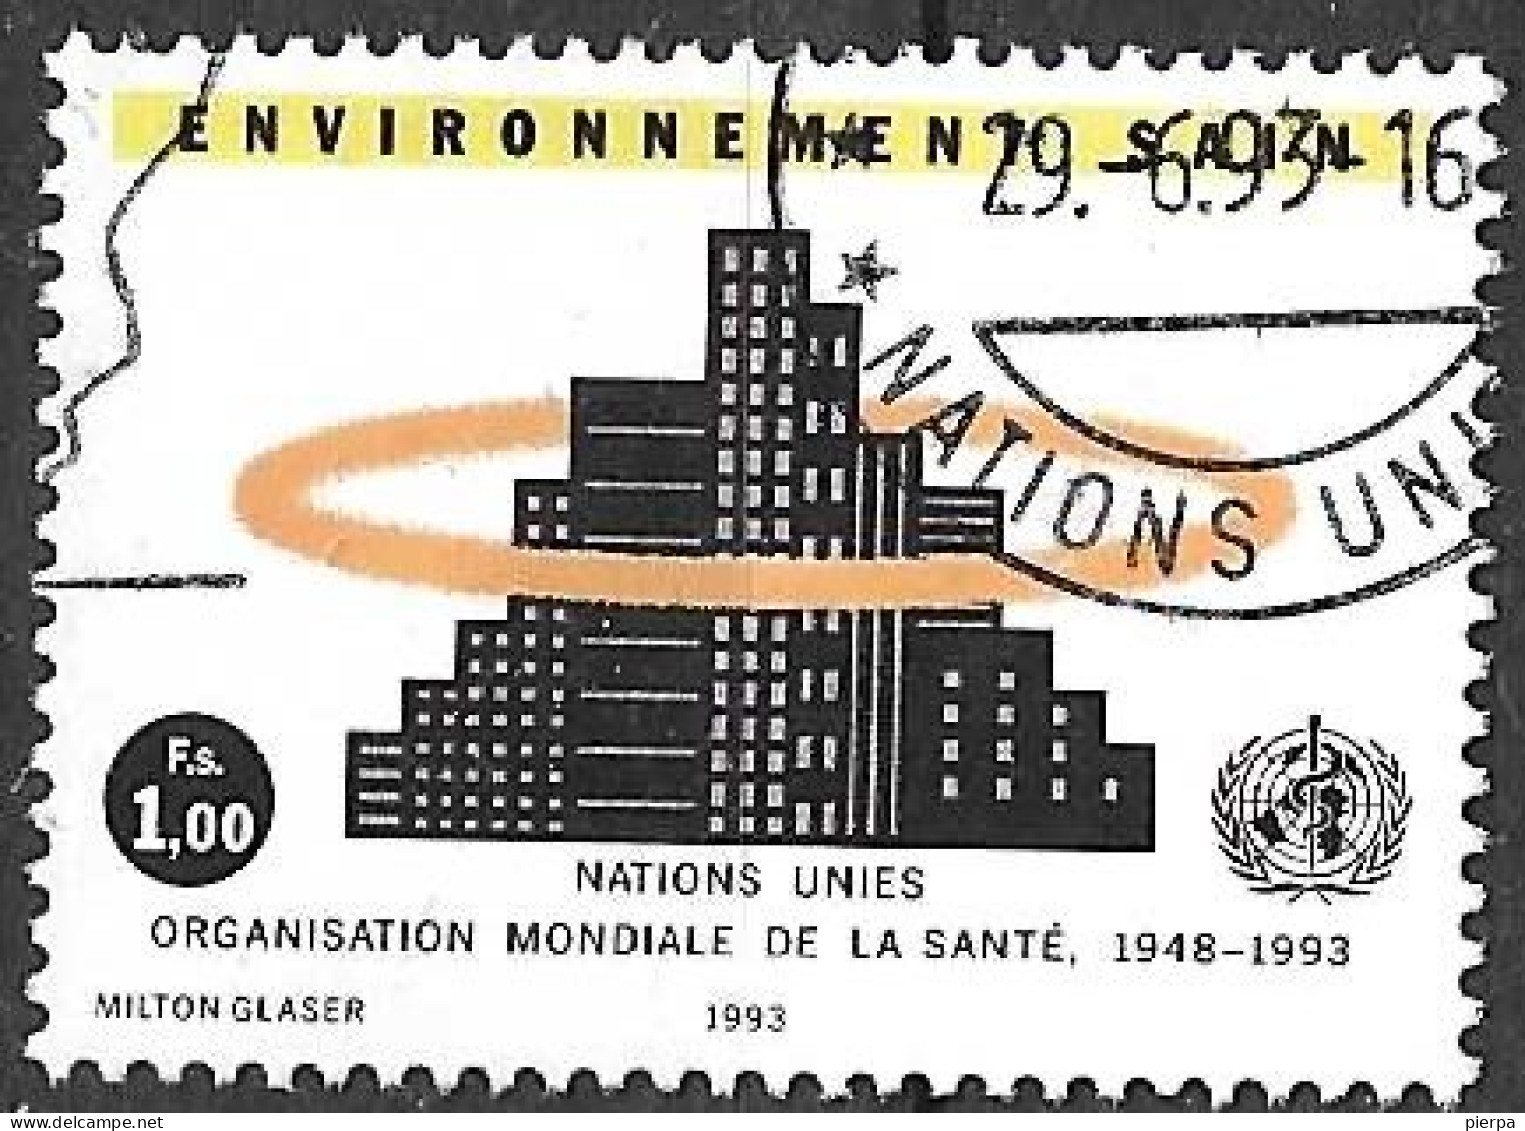 O.N.U. GENEVE - 1993 - PRO AMBIENTE - FR. 1,00 -  USATO (YVERT 234 - MICHEL 232) - Gebruikt